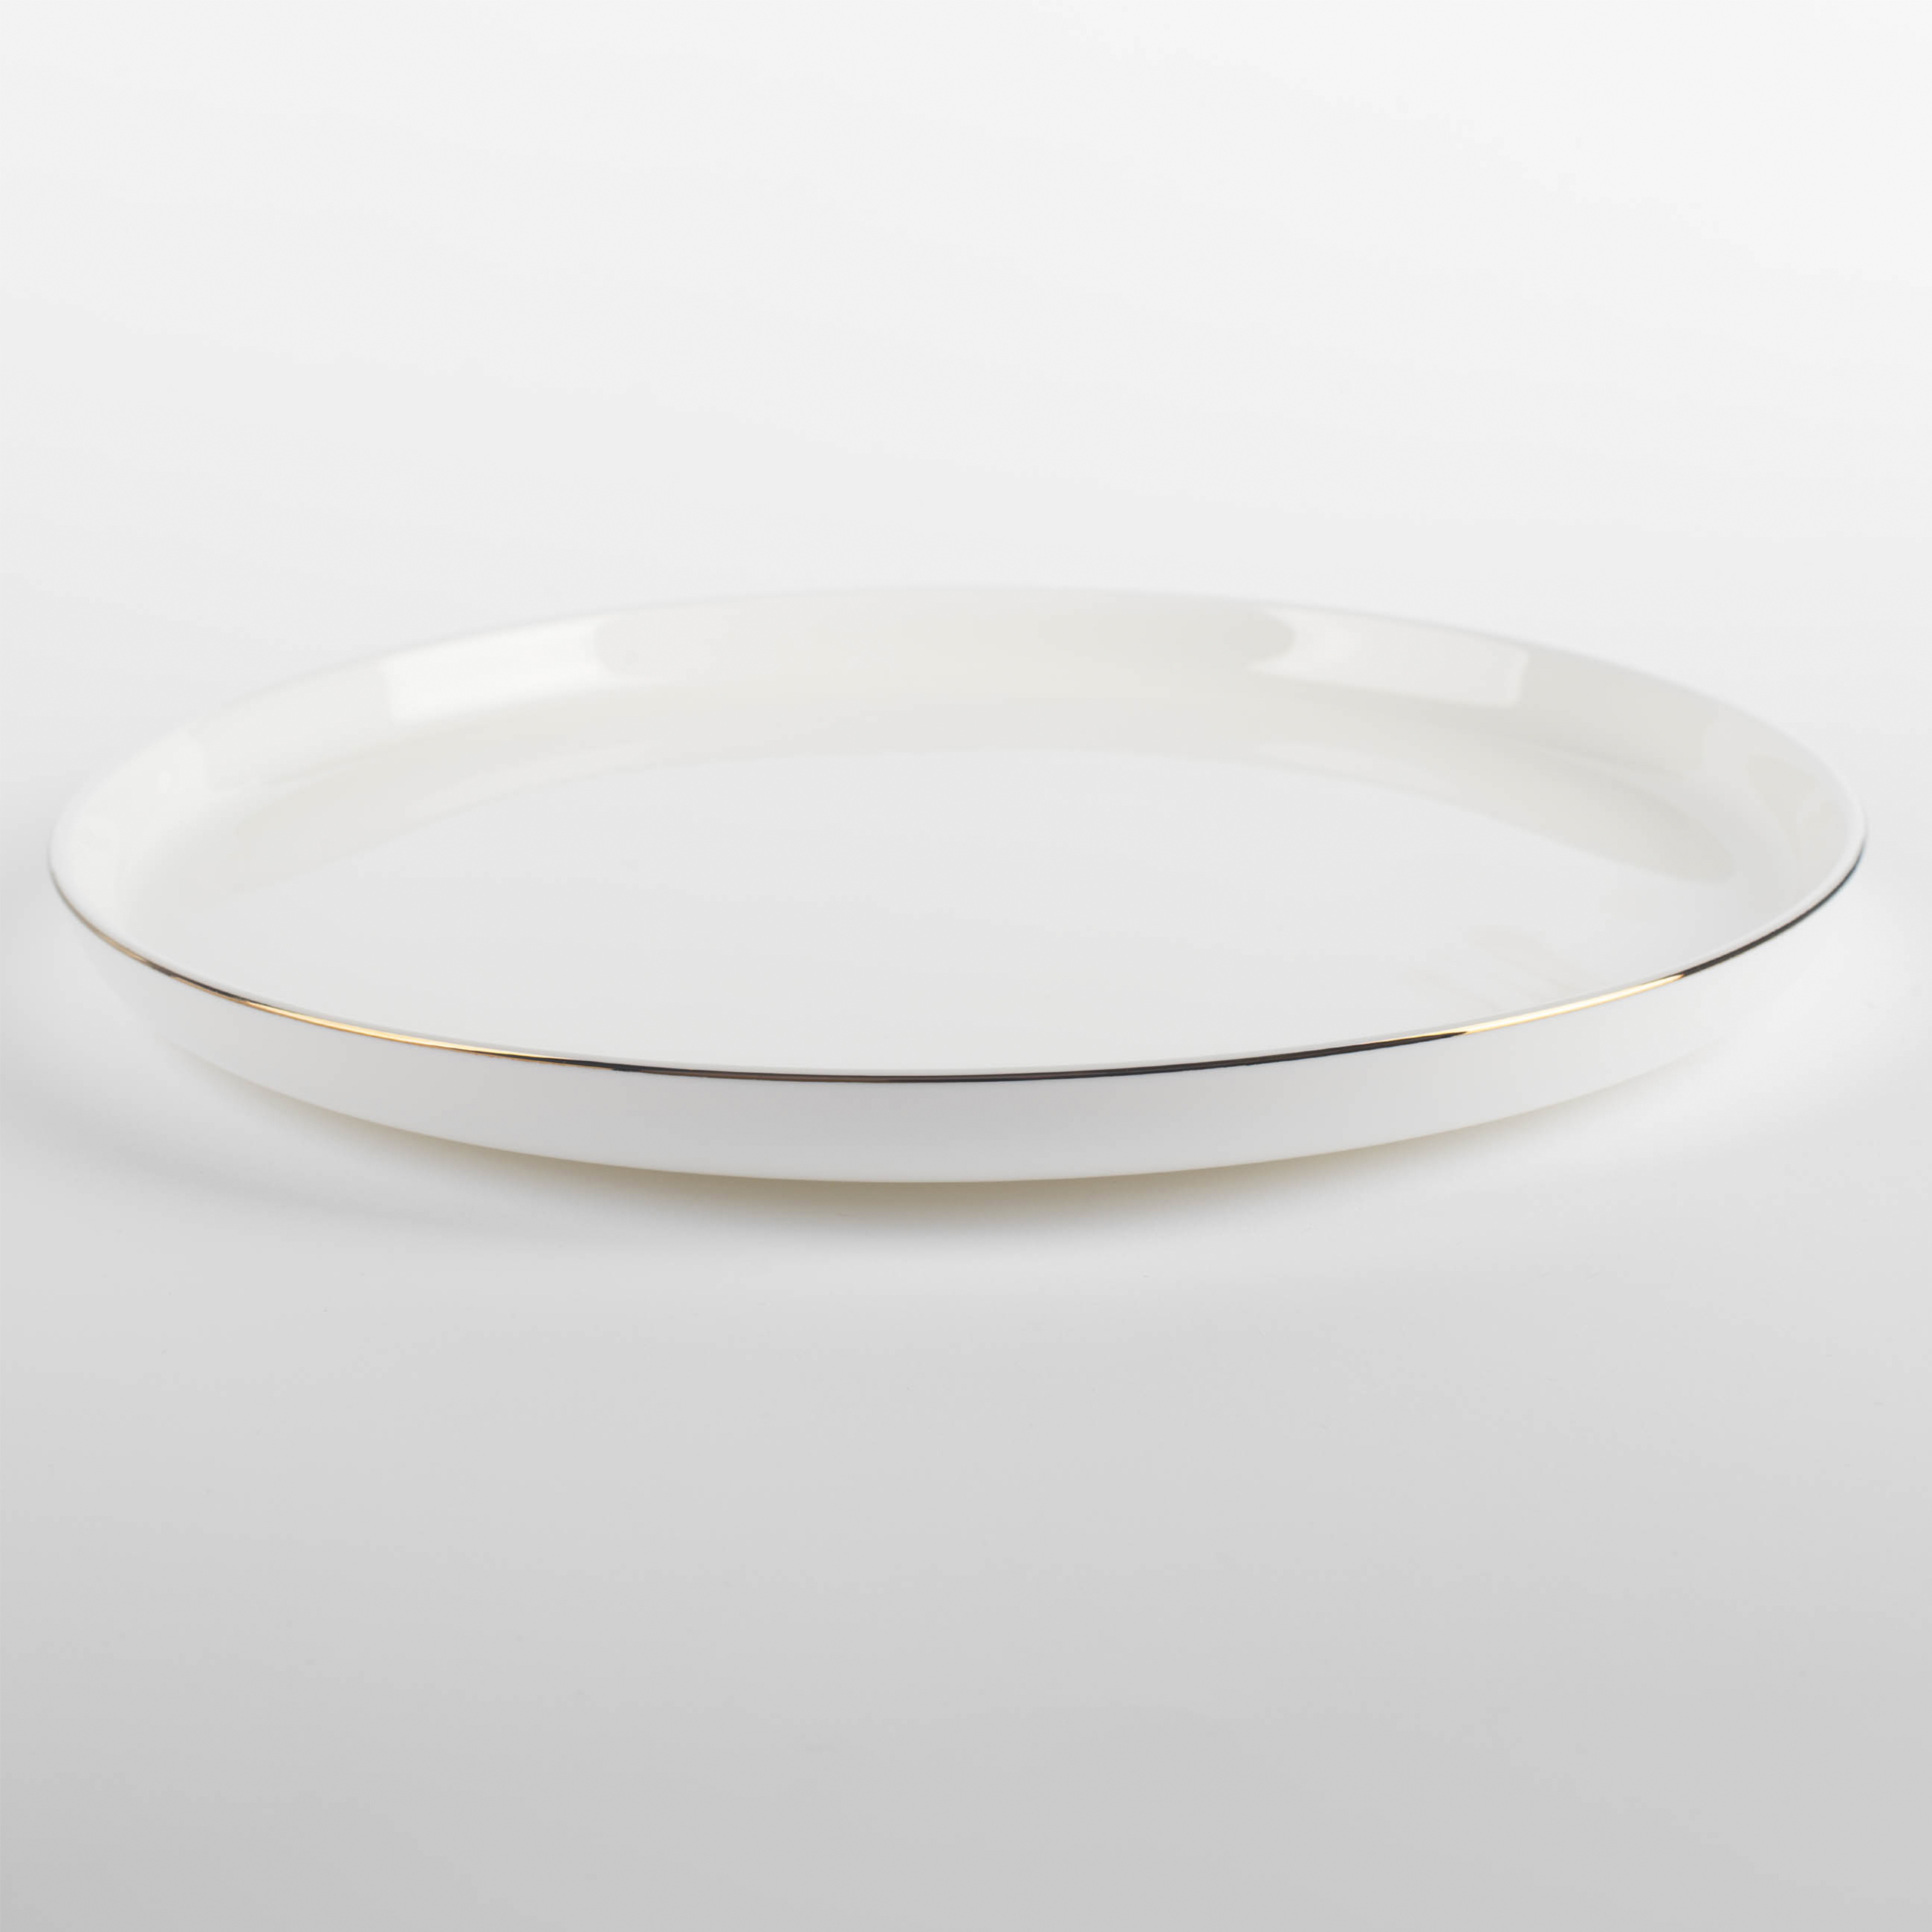 Тарелка обеденная, 26 см, фарфор F, белая, Ideal gold изображение № 3